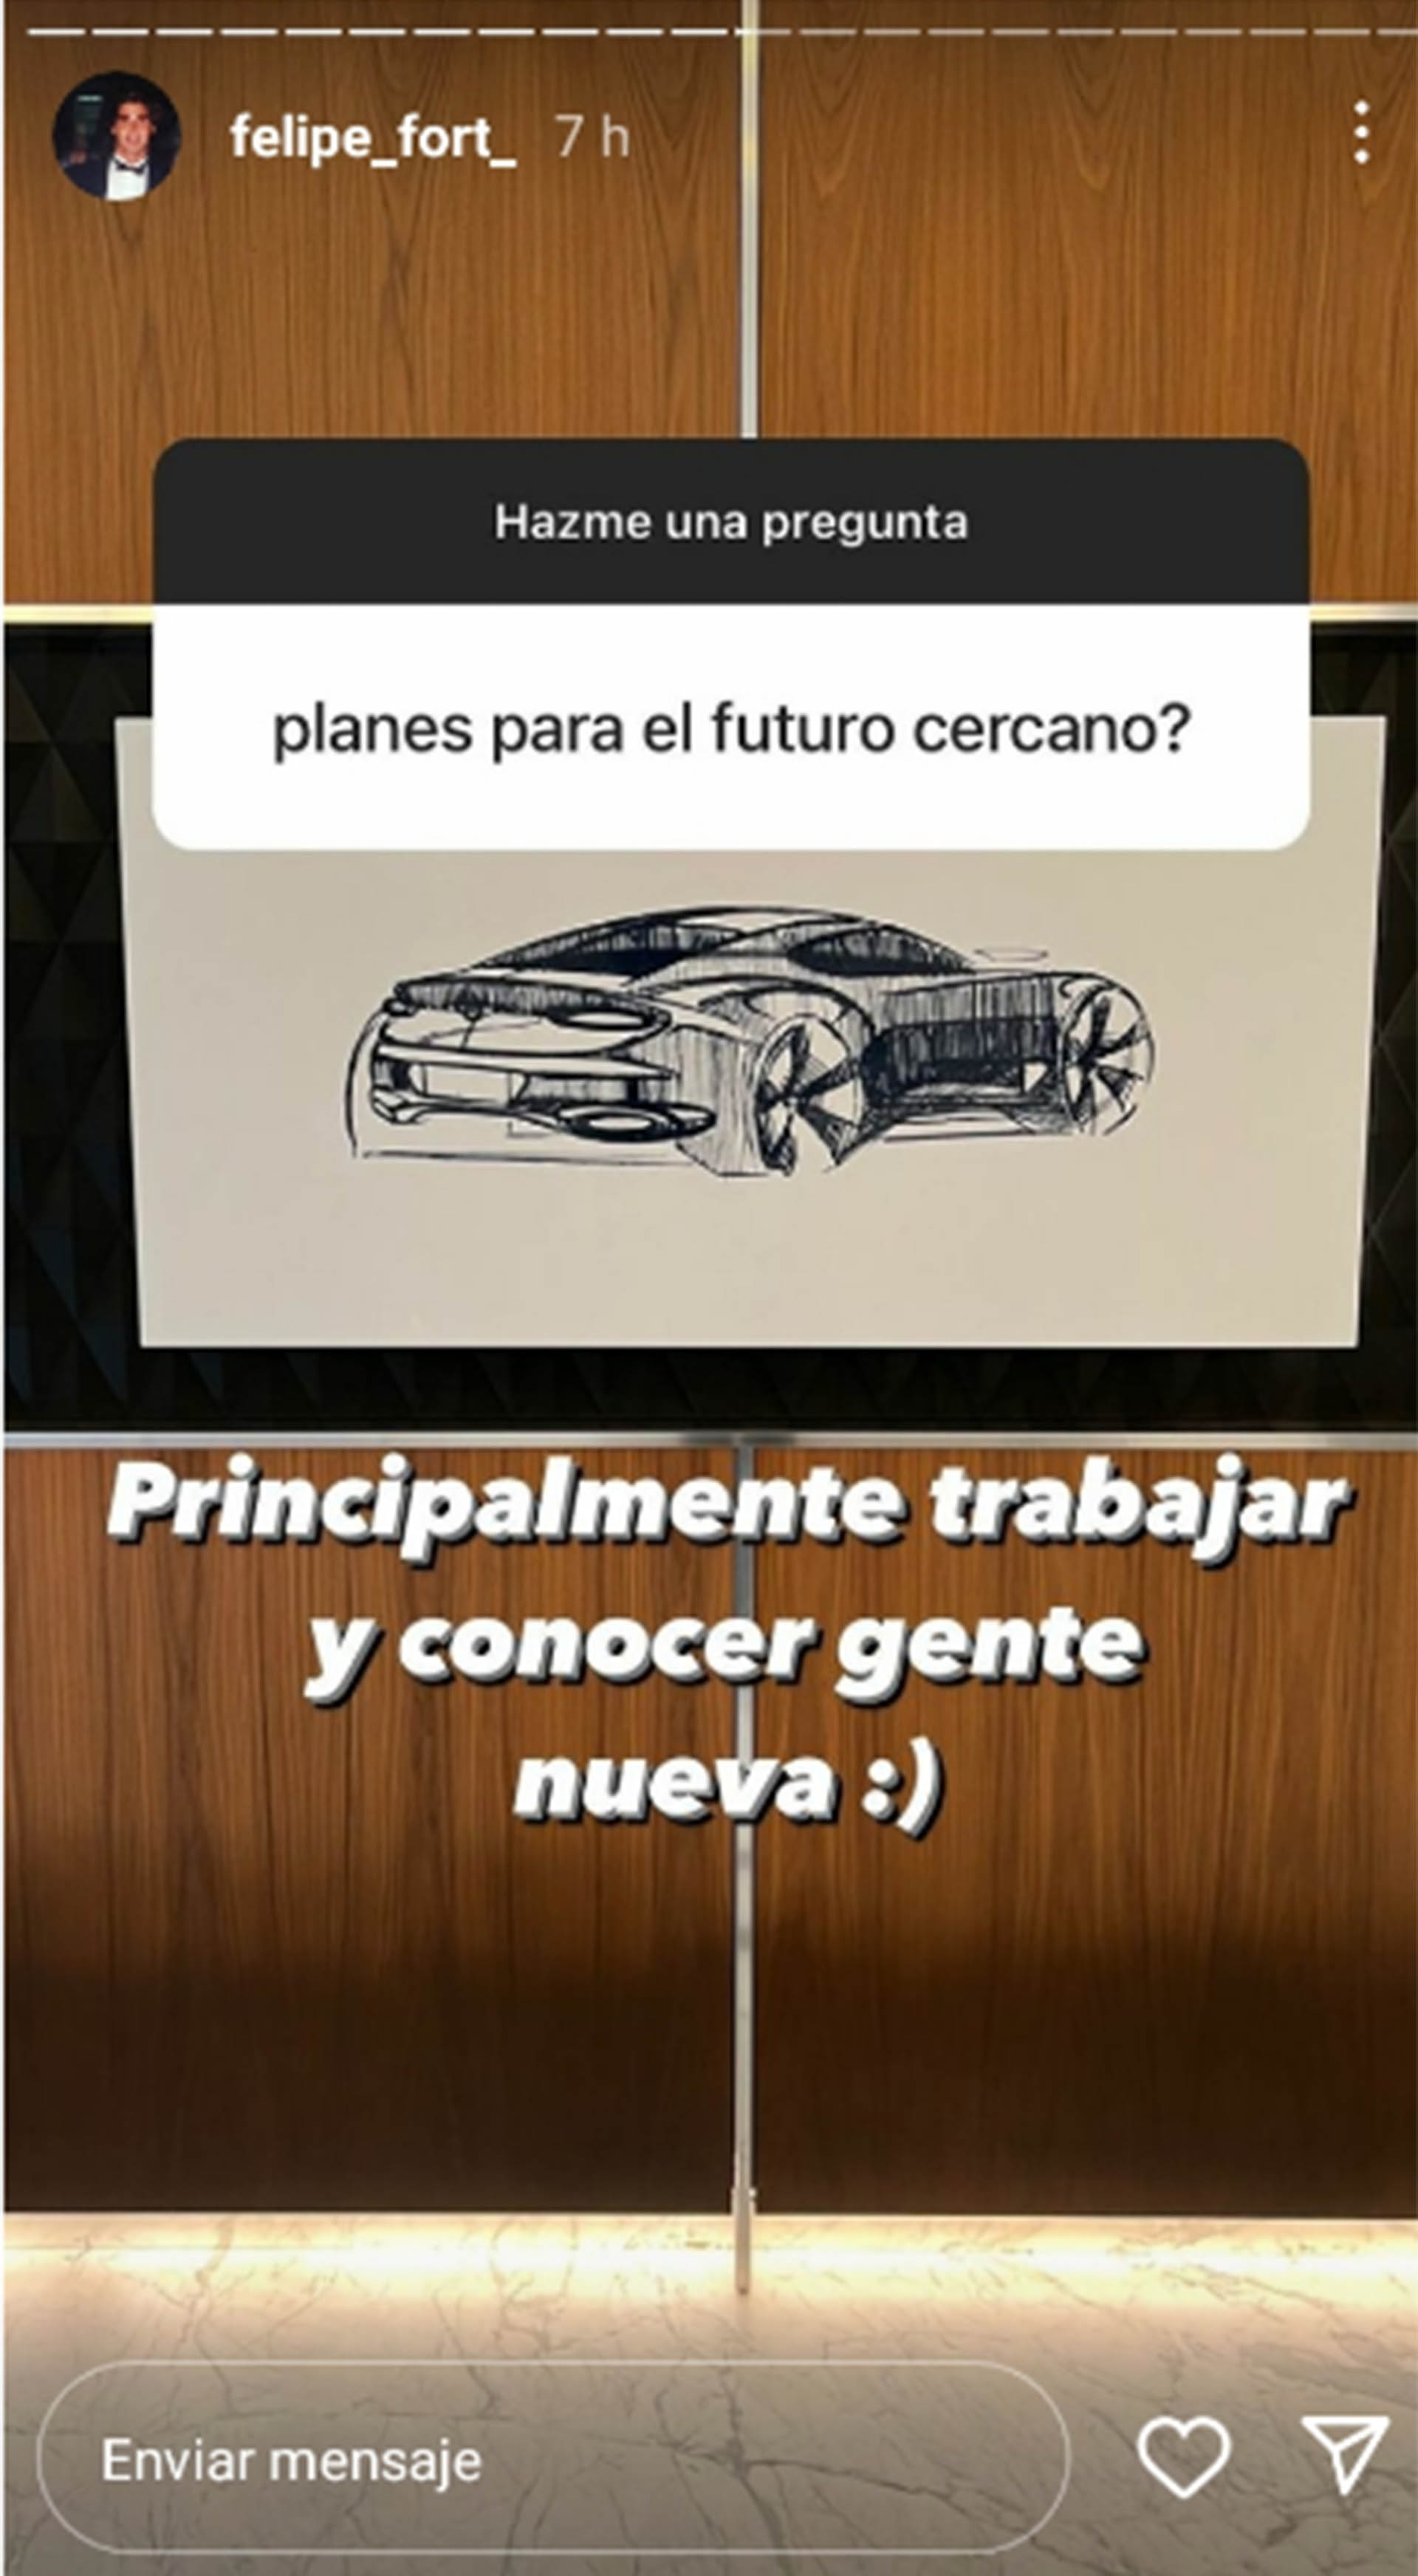 Felipe Fort y sus planes a futuro